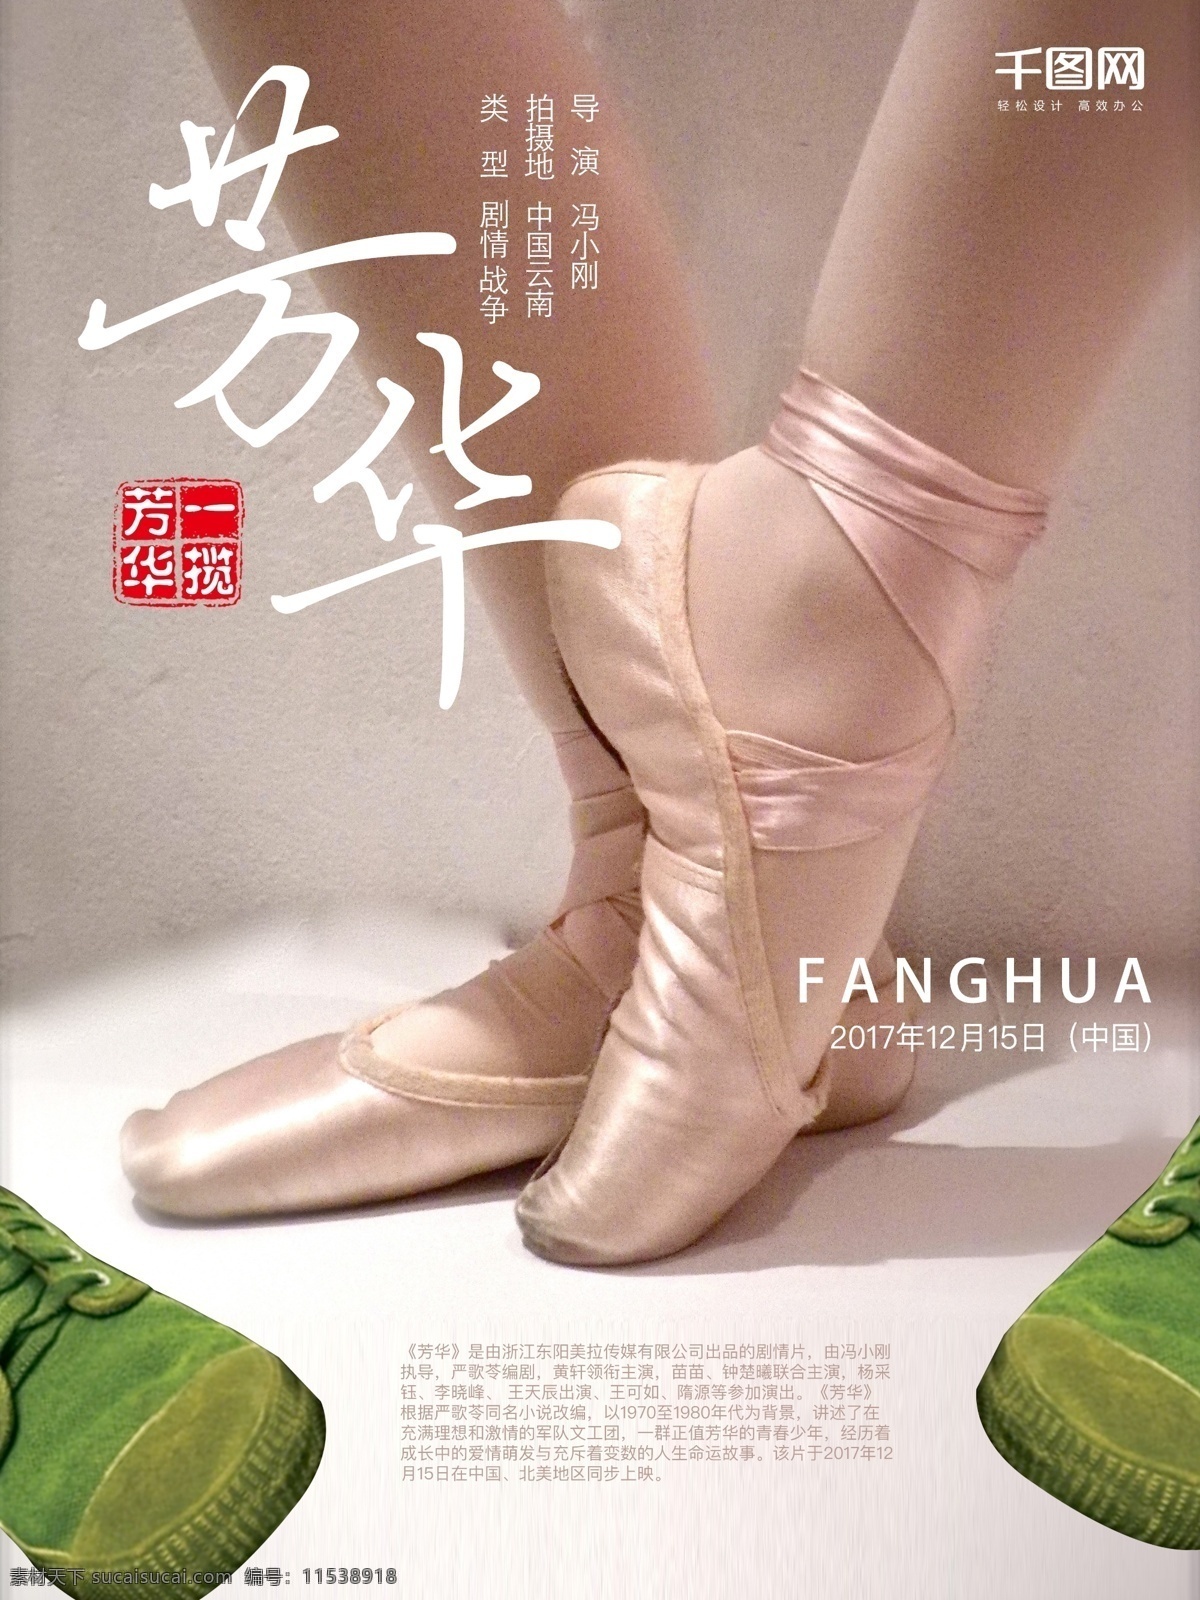 芳华 舞蹈 电影海报 芭蕾舞 绿色布鞋 题材电影 舞蹈鞋子 战争